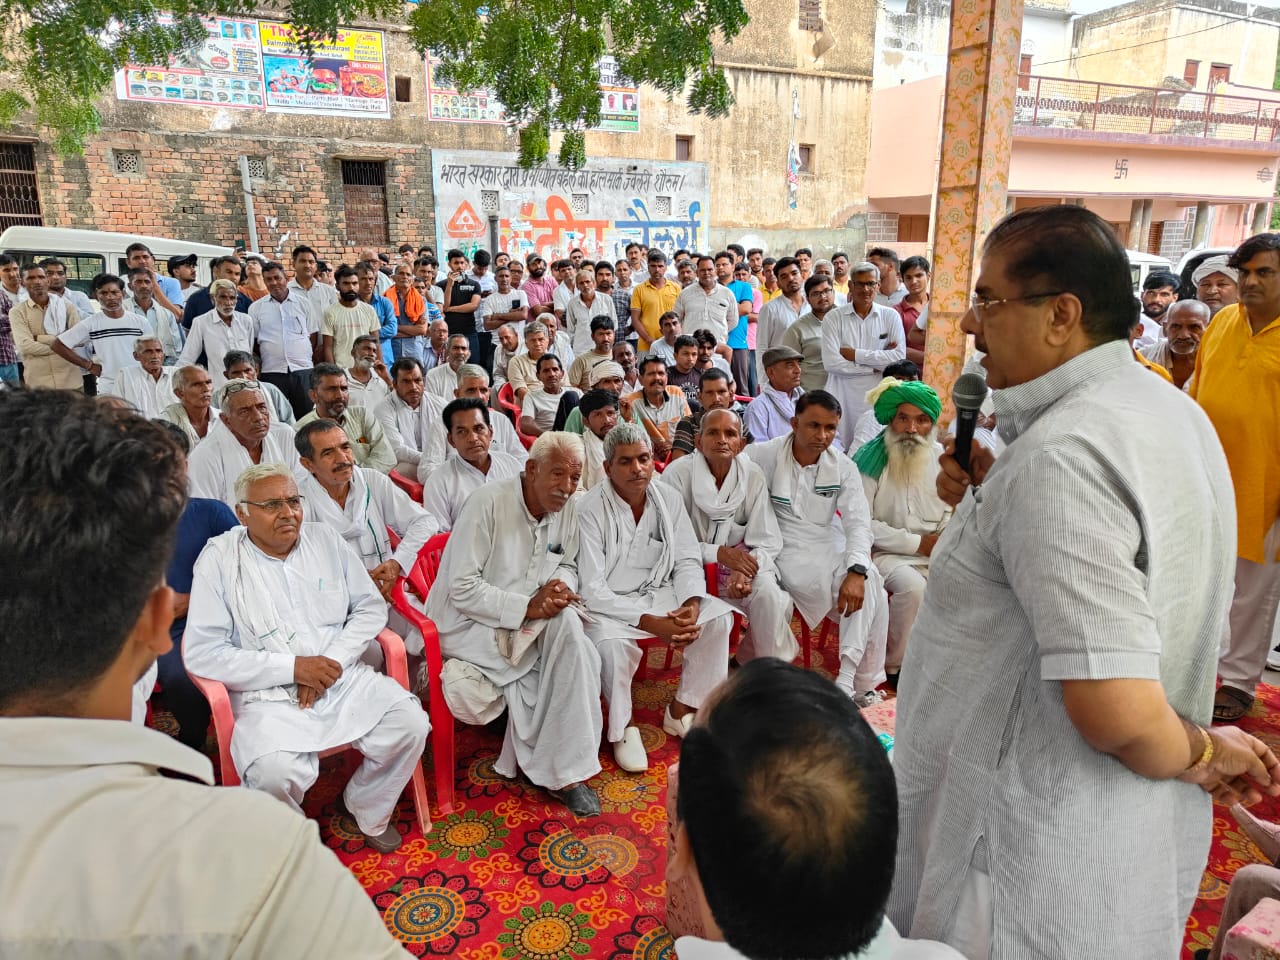 17 सितंबर को दादरी में होने वाली रैली का निमंत्रण देने विभिन्न गांवों में पहुंचे अजय चौटाला